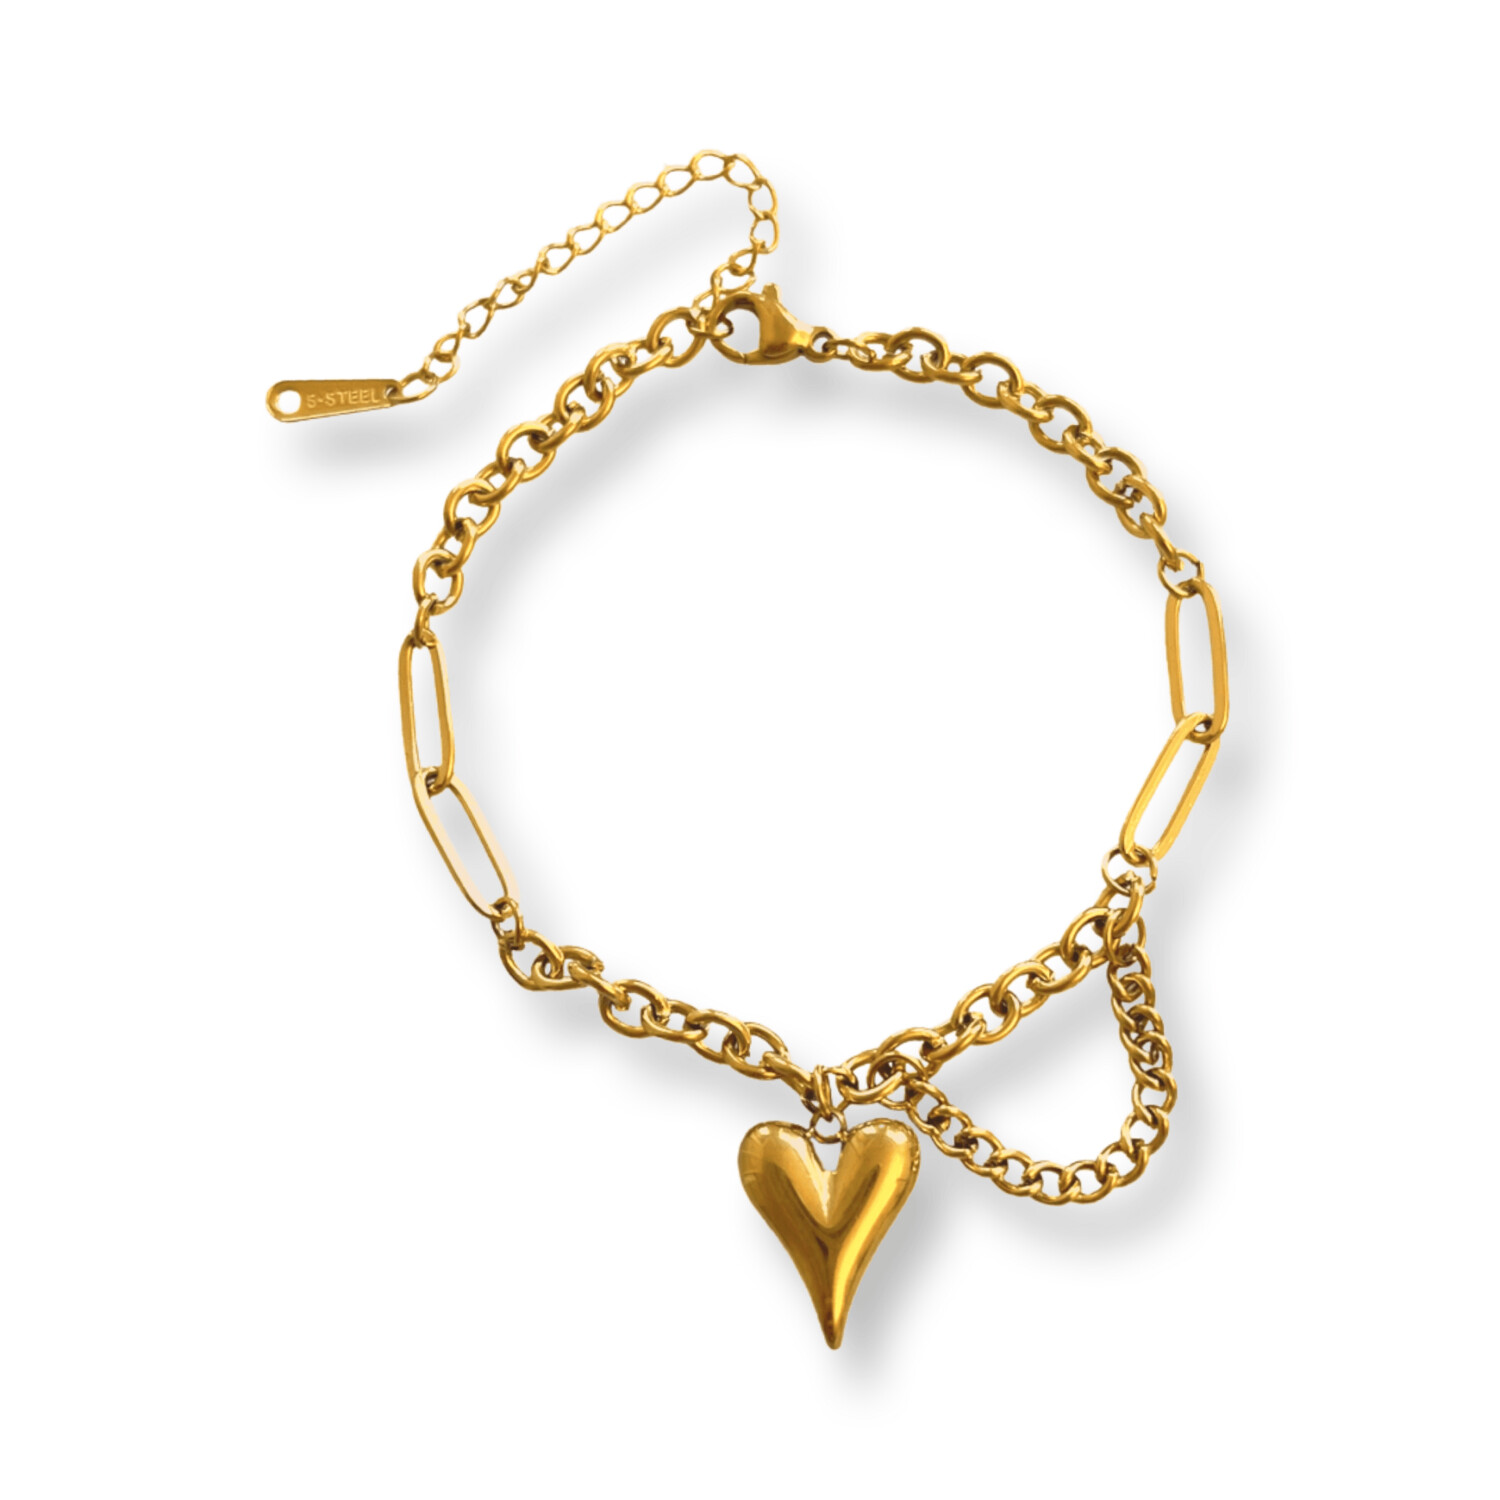 Purper terugvallen Potentieel Irena Gold Heart Armband - Stalen schakelarmband met hart hanger goudkleurig